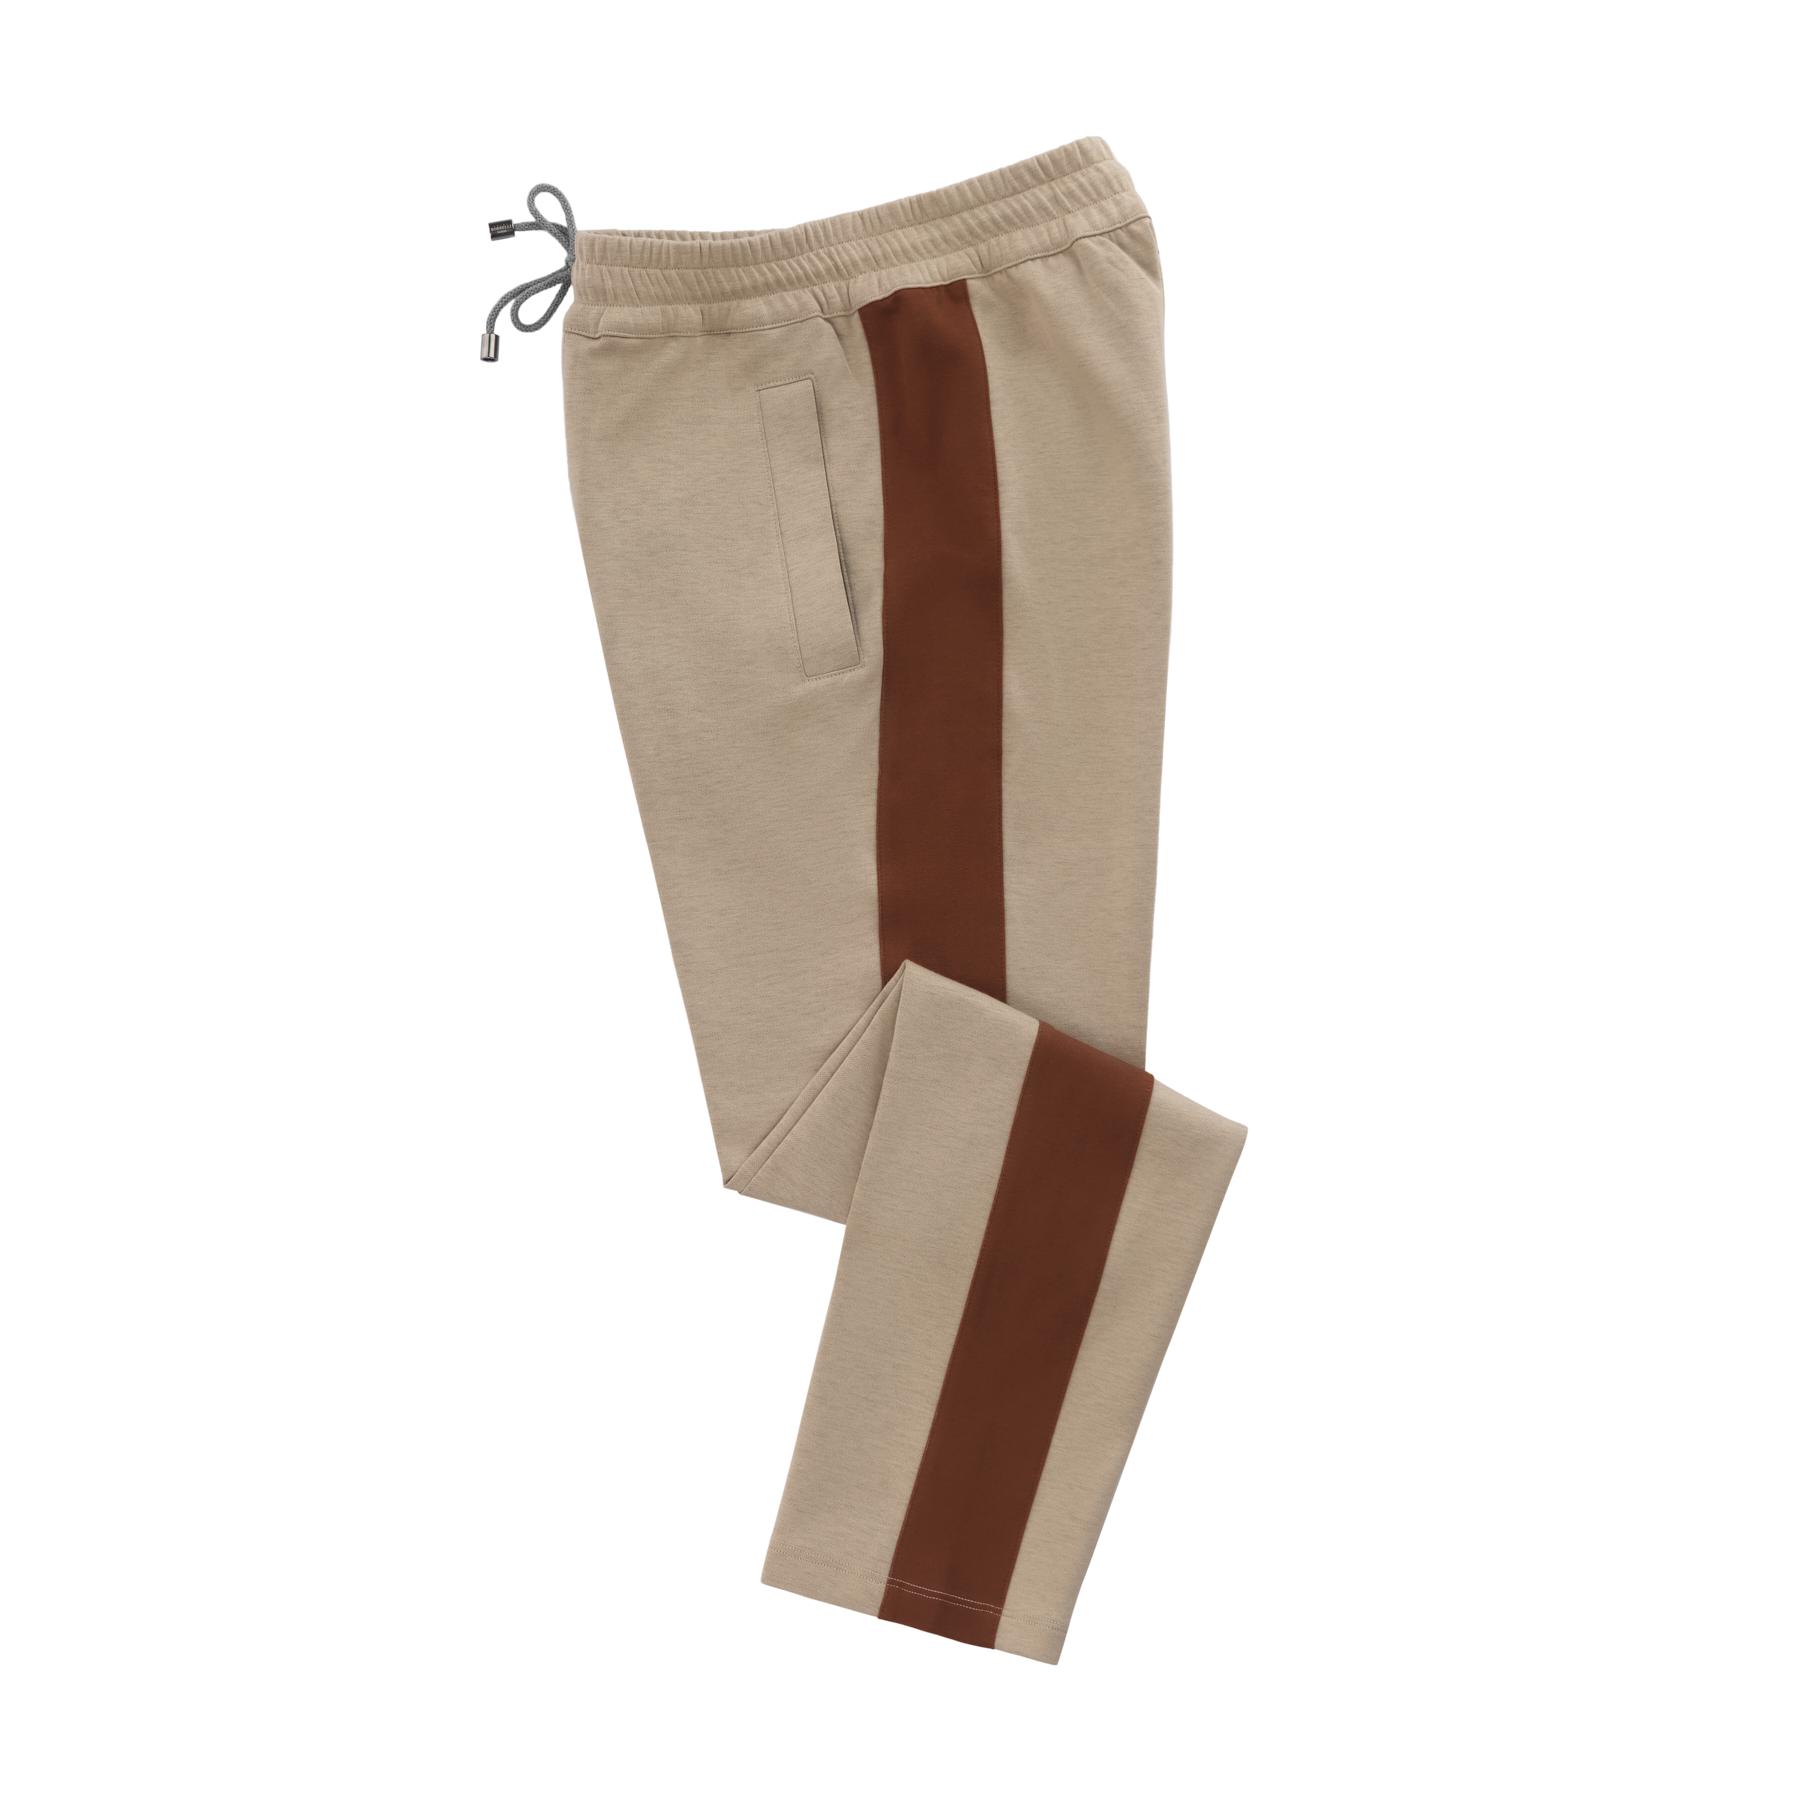 New $3300 Luigi Borrelli Light Brown Cotton Solid Suit LBDP175160R8 